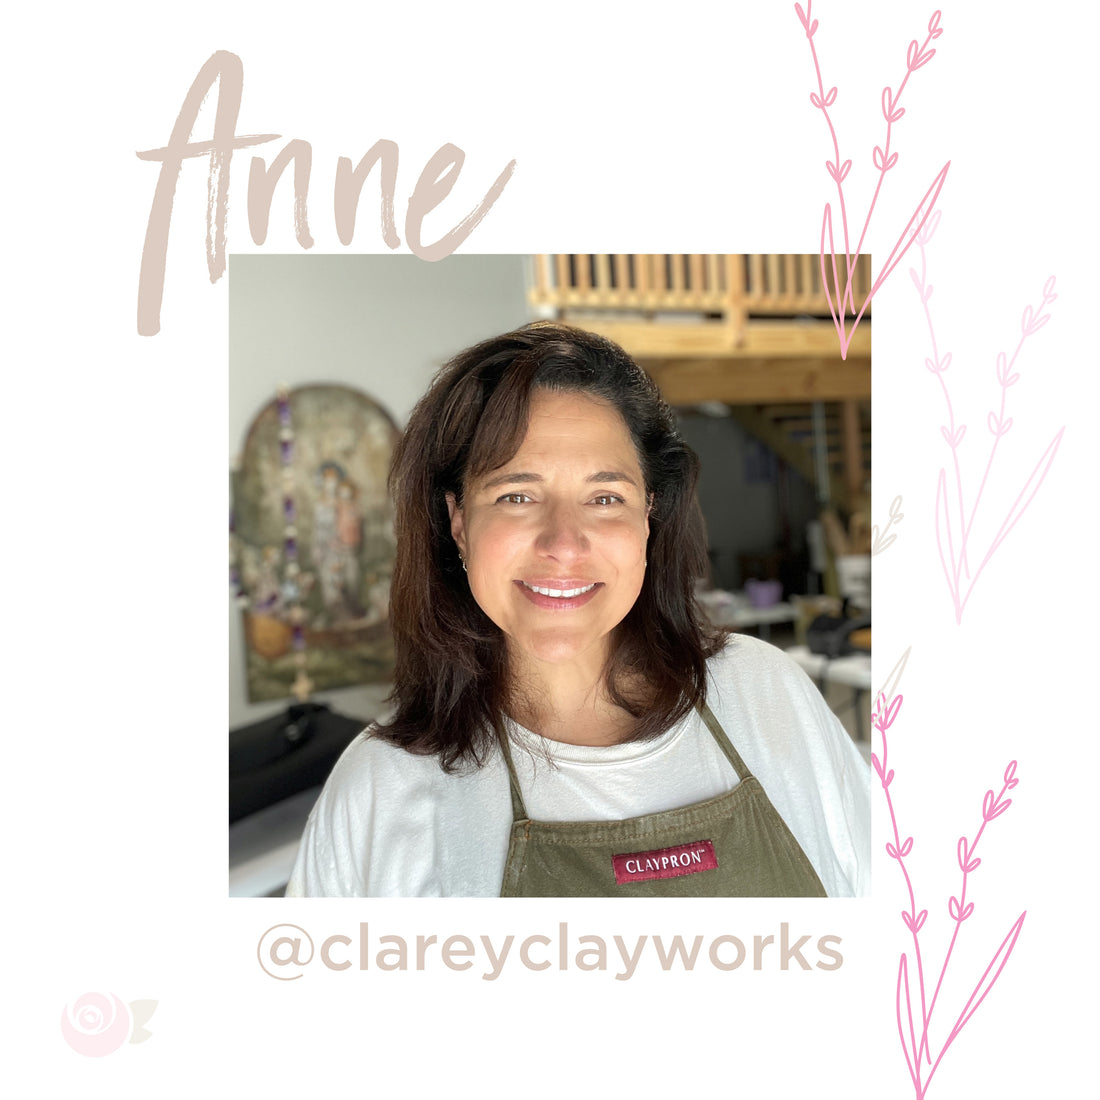 Clarey Clayworks